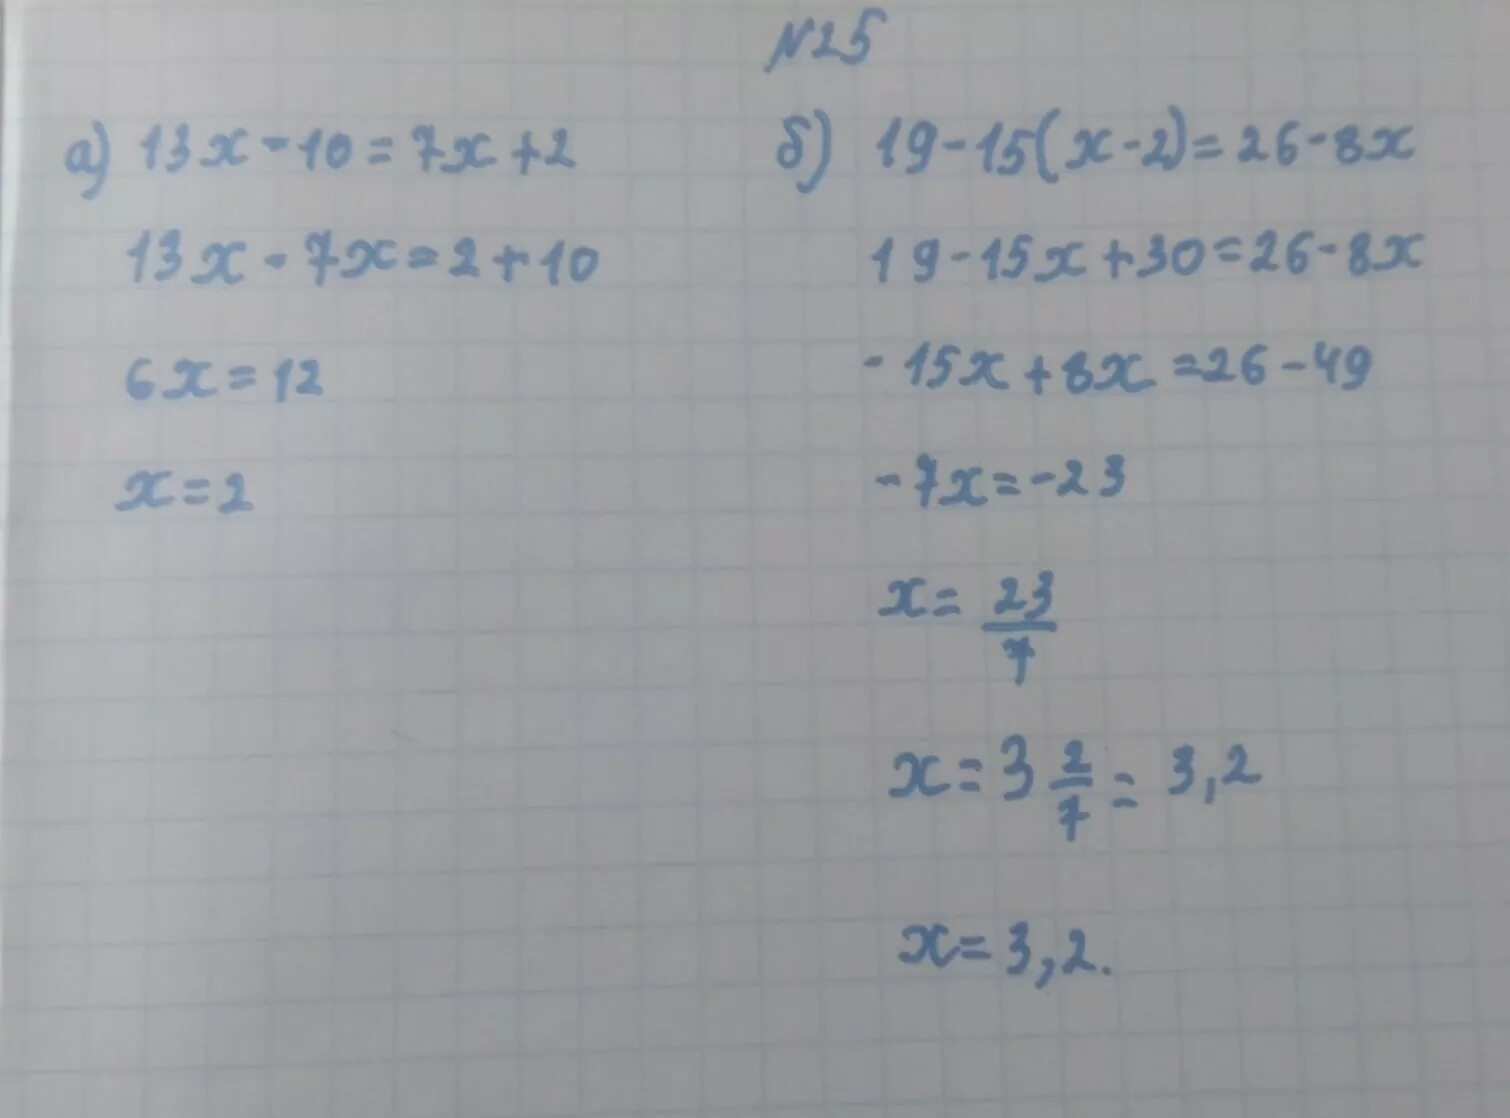 13 X 2 2 X 13 2. (13-Х)(13-X) решение. 13x-26=130 решение. 13х-26 -130 решить. 0 5x 13 2 5x 7